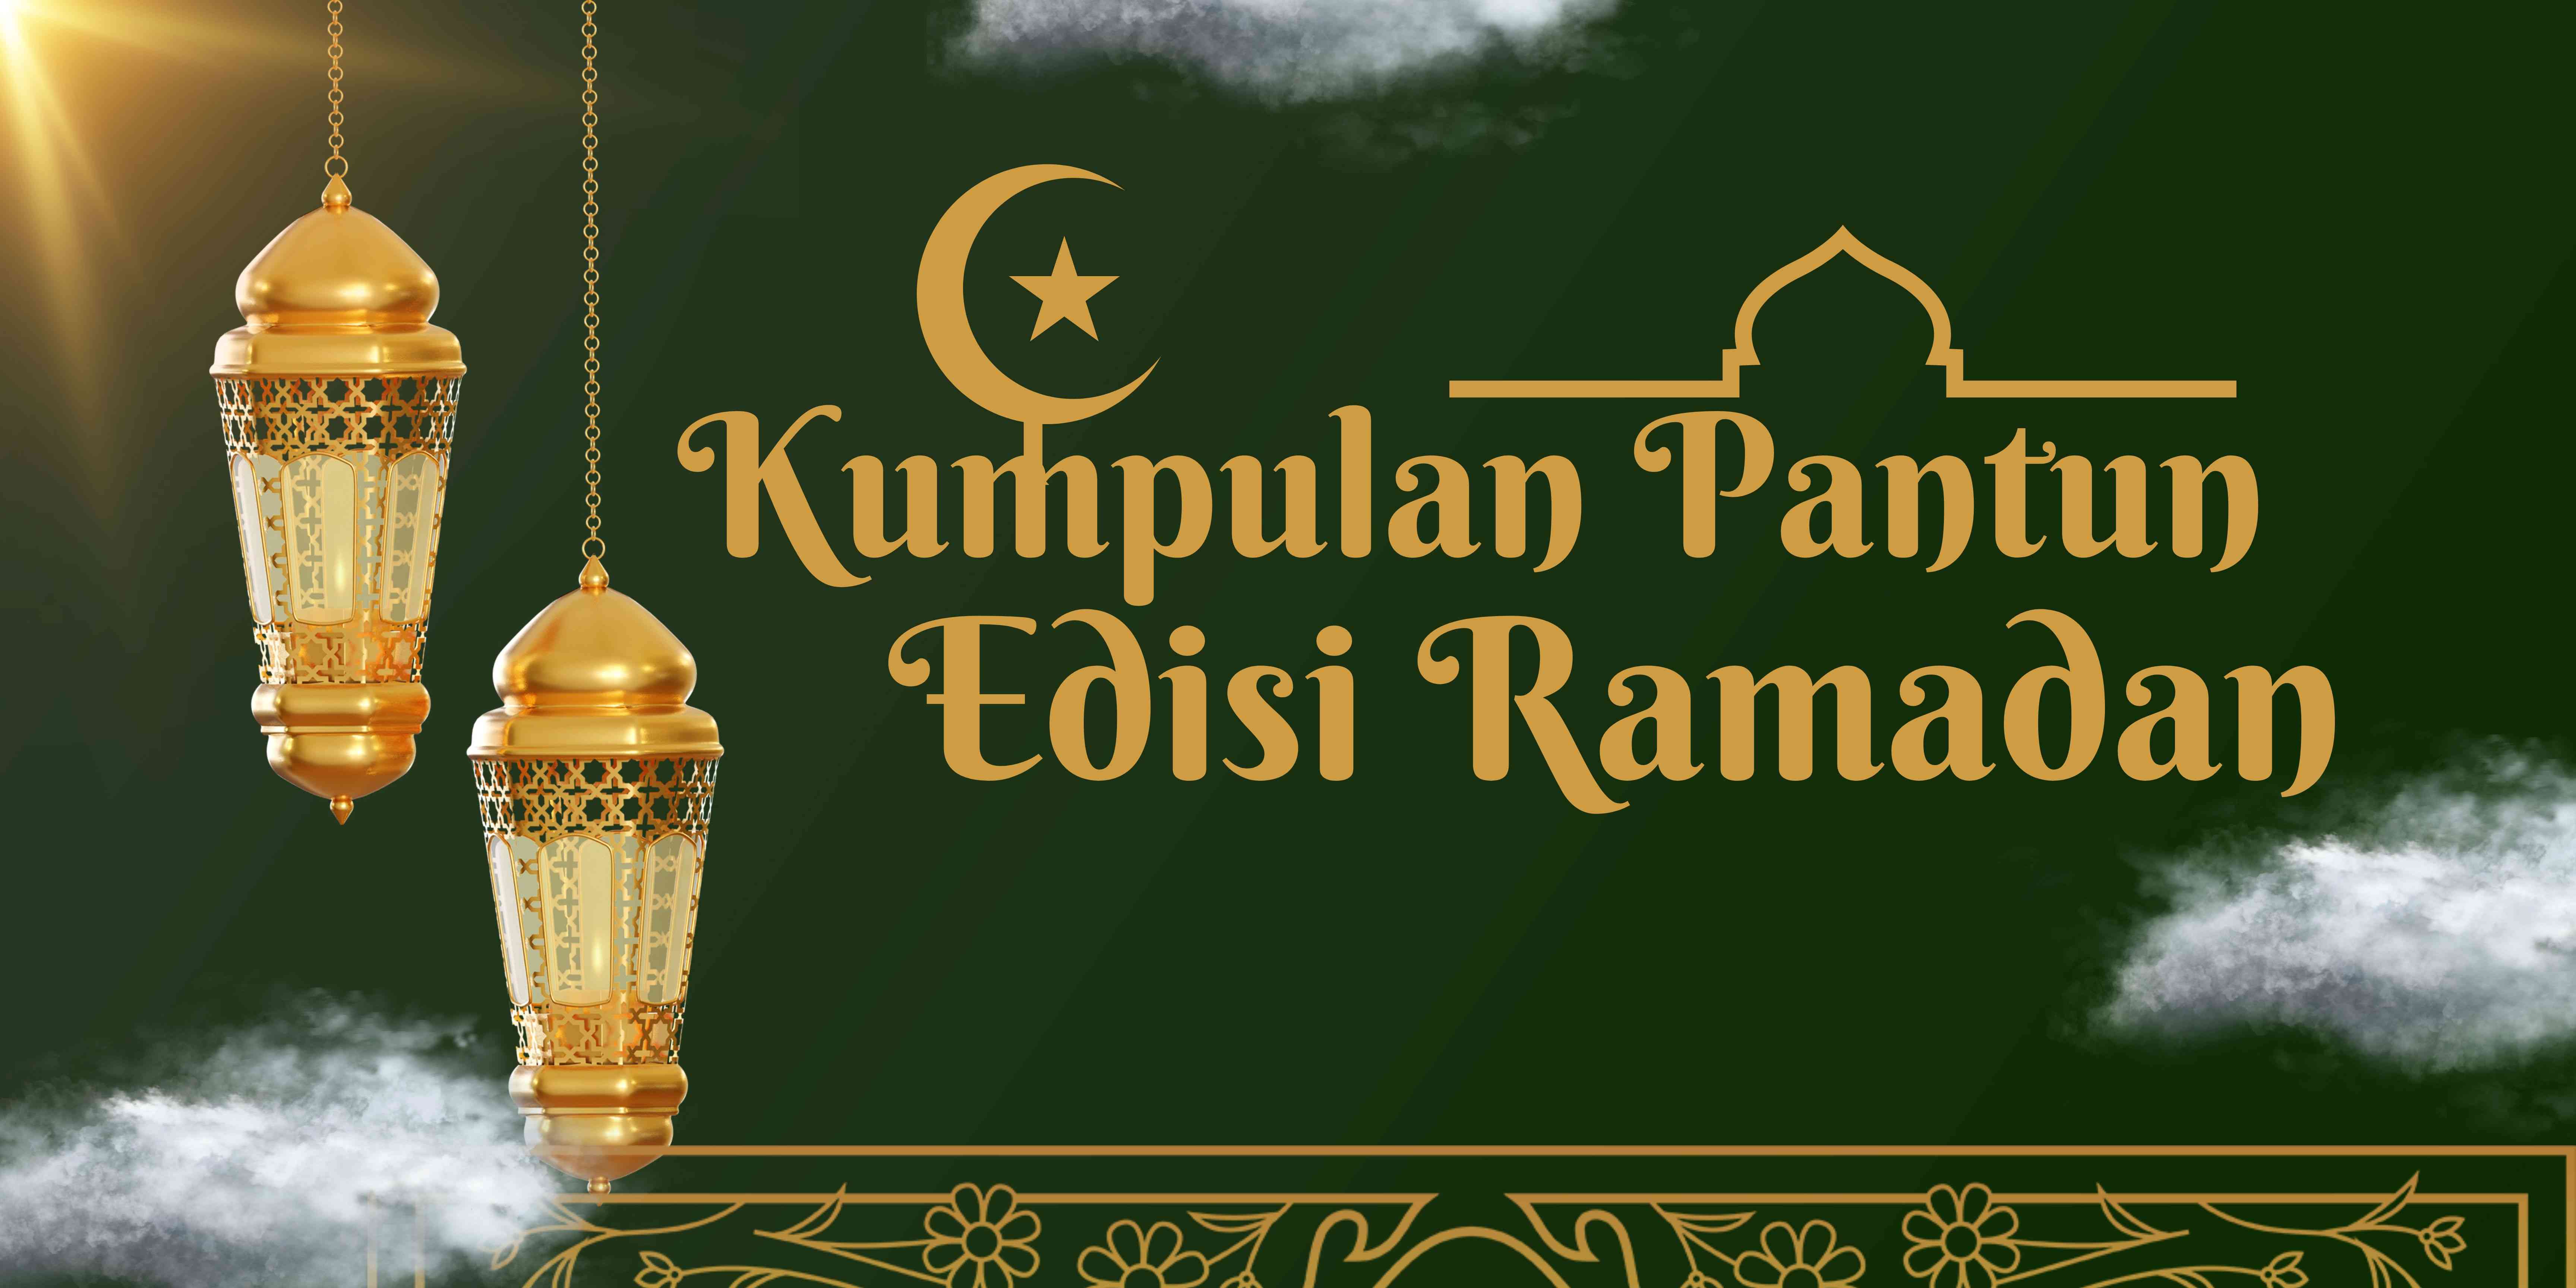 Kumpulan Pantun Edisi Ramadan. (Edit by Siska Fajarrany via canva)